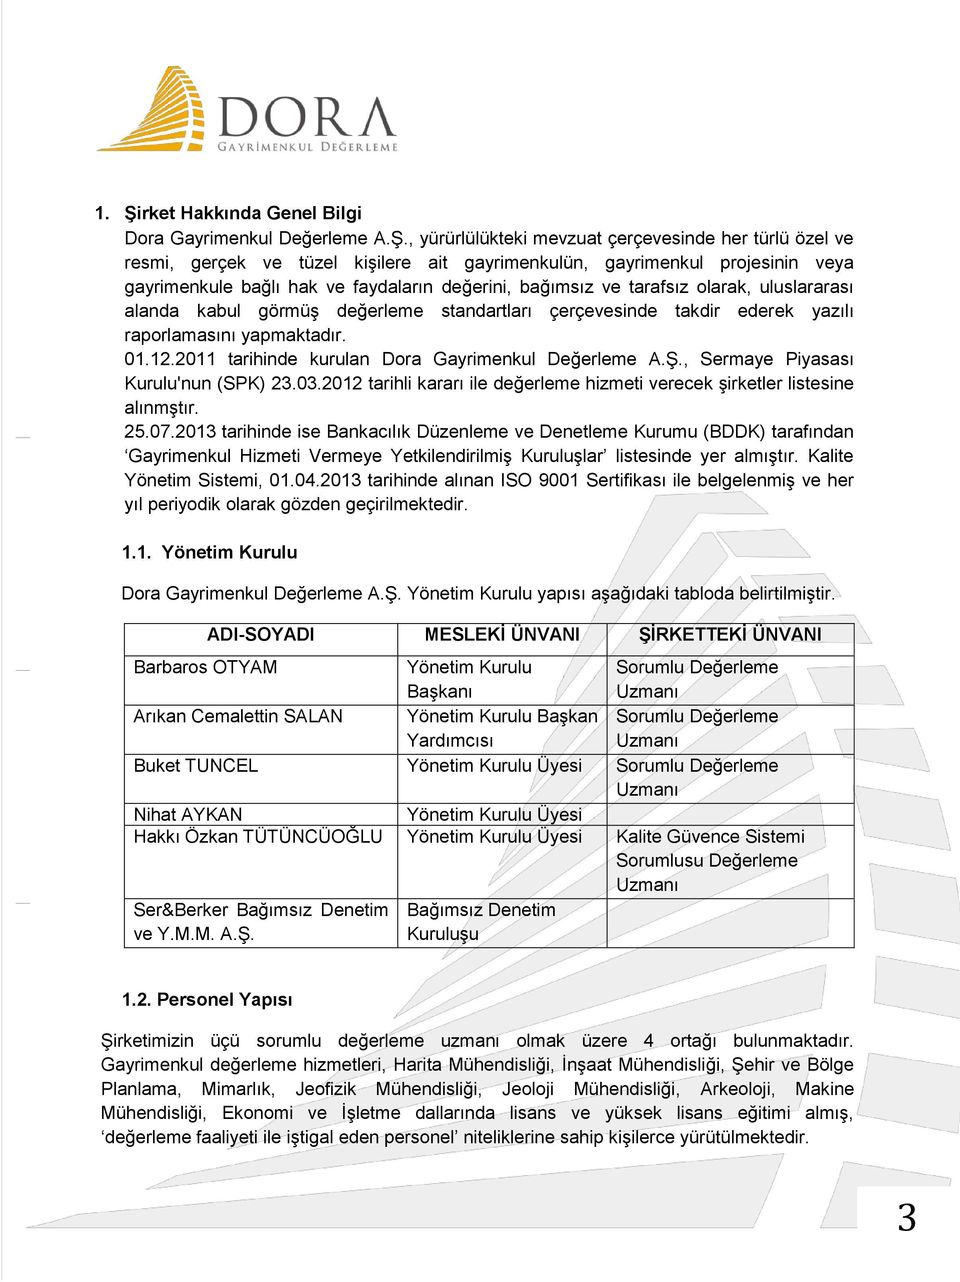 2011 tarihinde kurulan Dora Gayrimenkul Değerleme A.Ş., Sermaye Piyasası Kurulu'nun (SPK) 23.03.2012 tarihli kararı ile değerleme hizmeti verecek şirketler listesine alınmştır. 25.07.